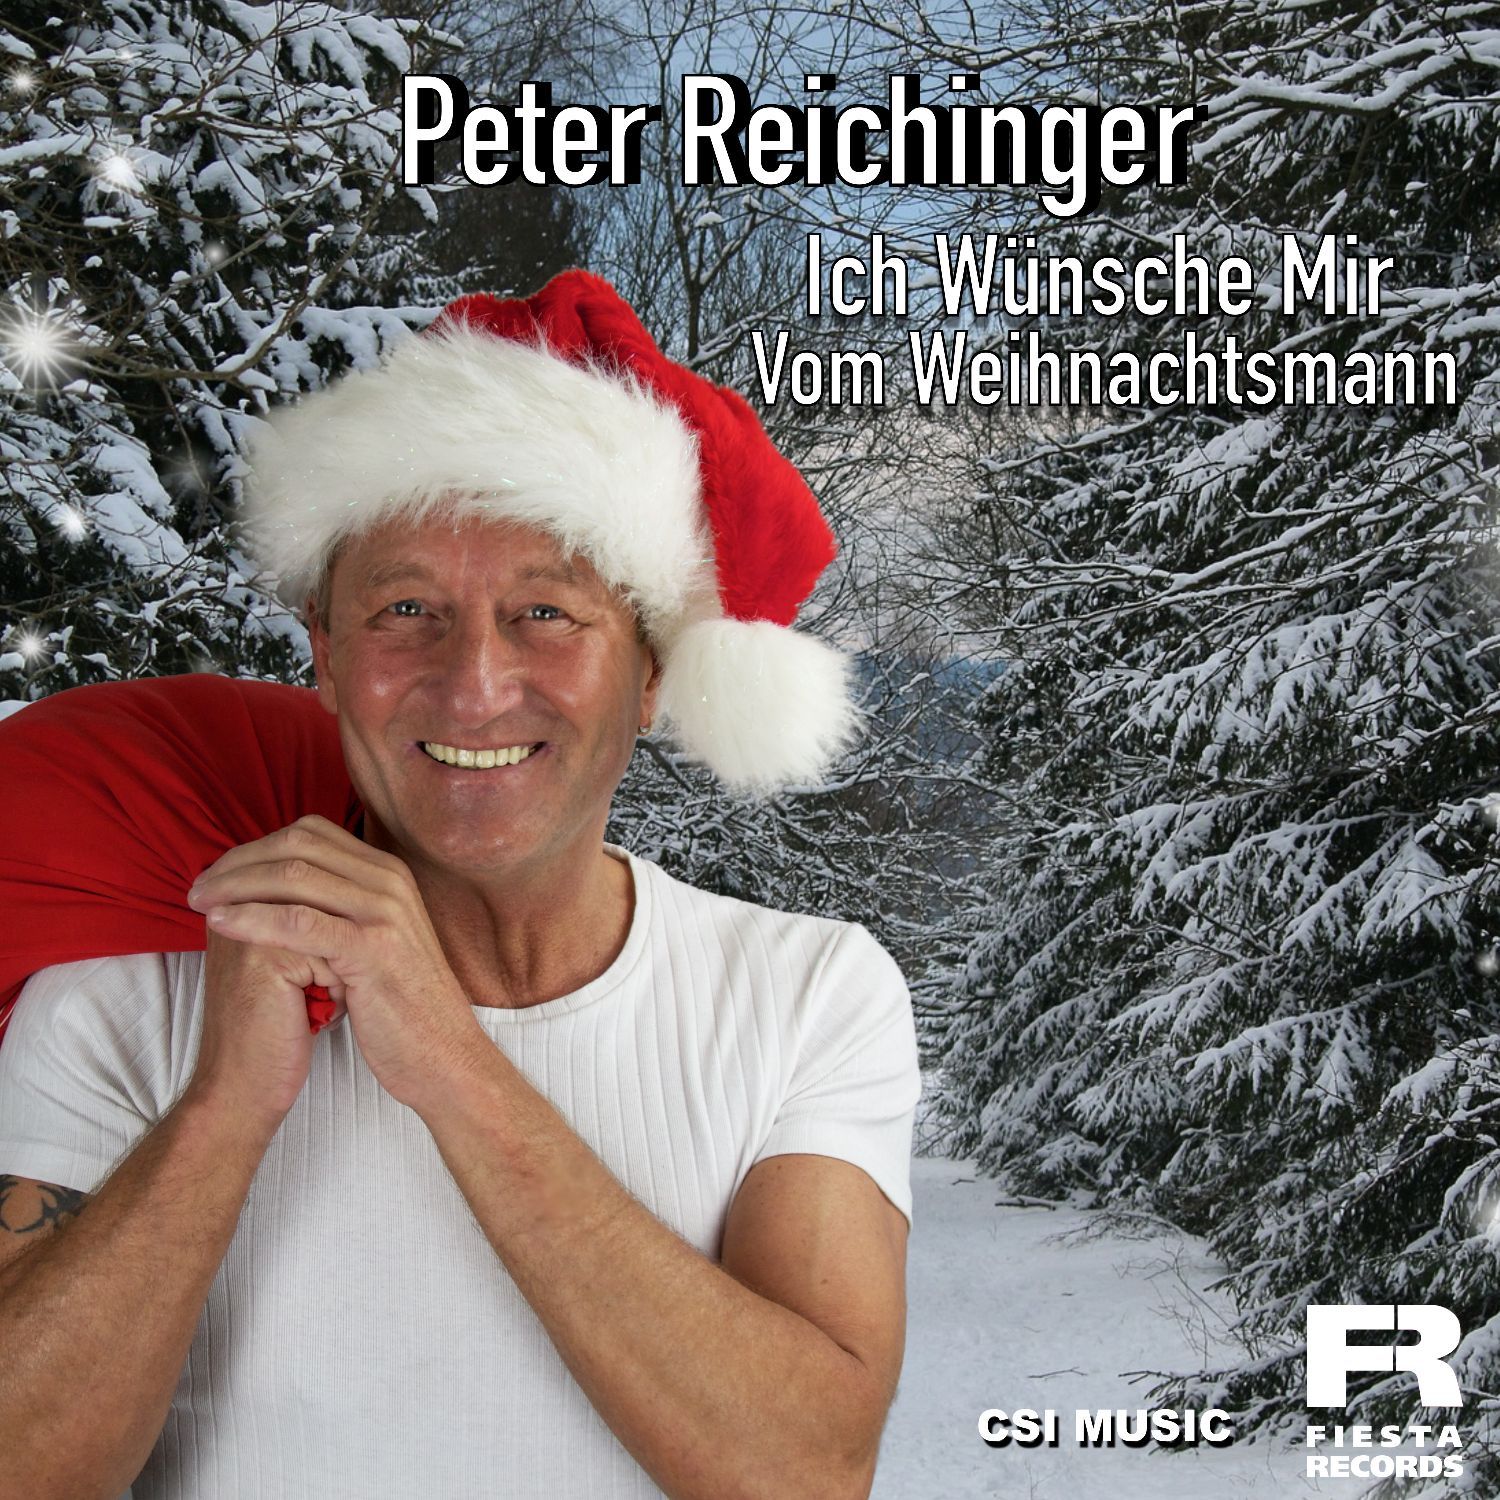 Peter Reichinger - Ich wünsche mir vom Weihanchtsmann